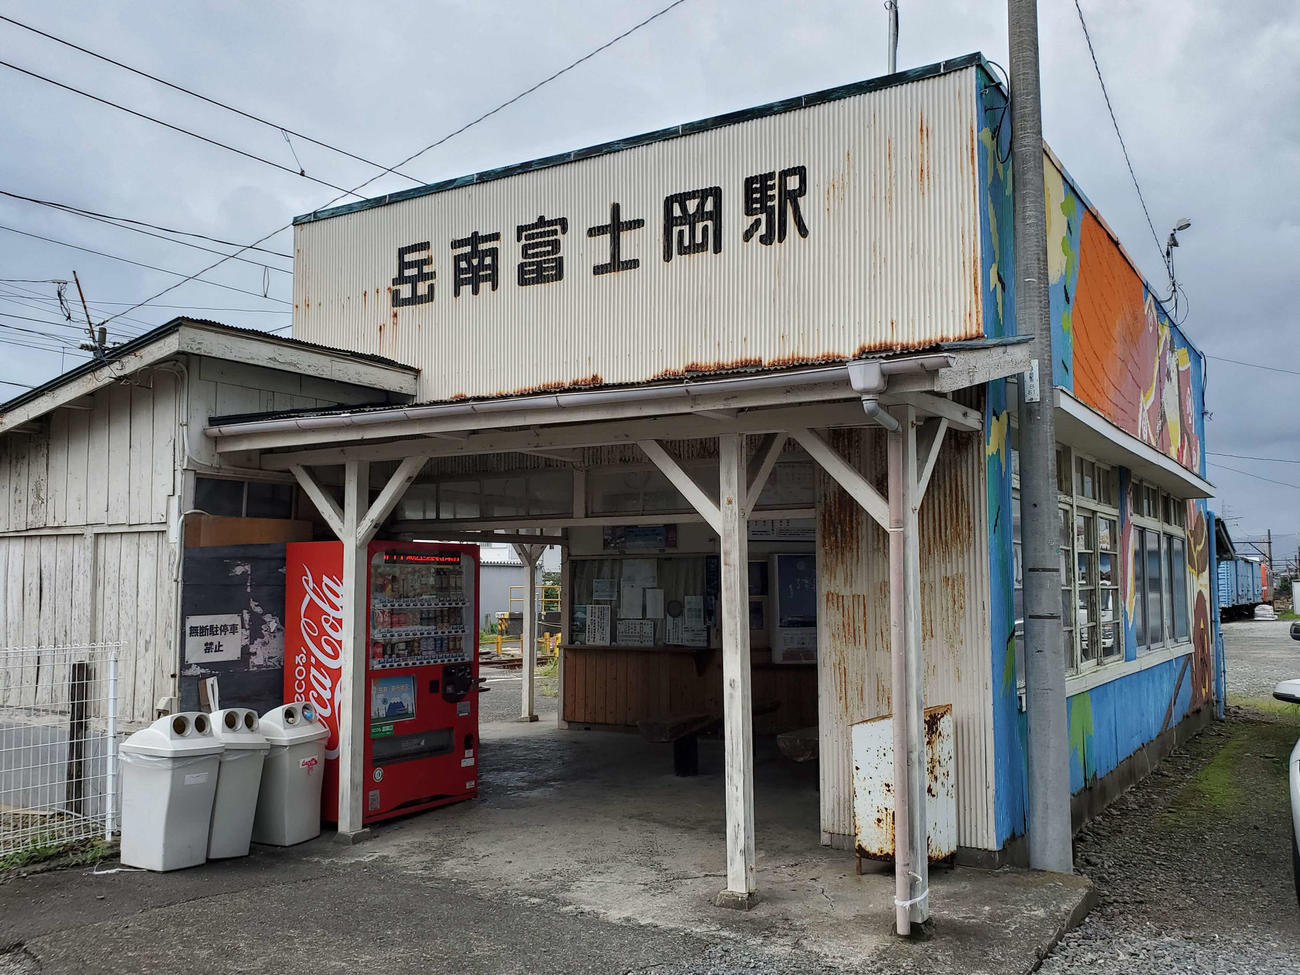 〈14〉かつて活躍した機関車が留置されている岳南富士岡駅